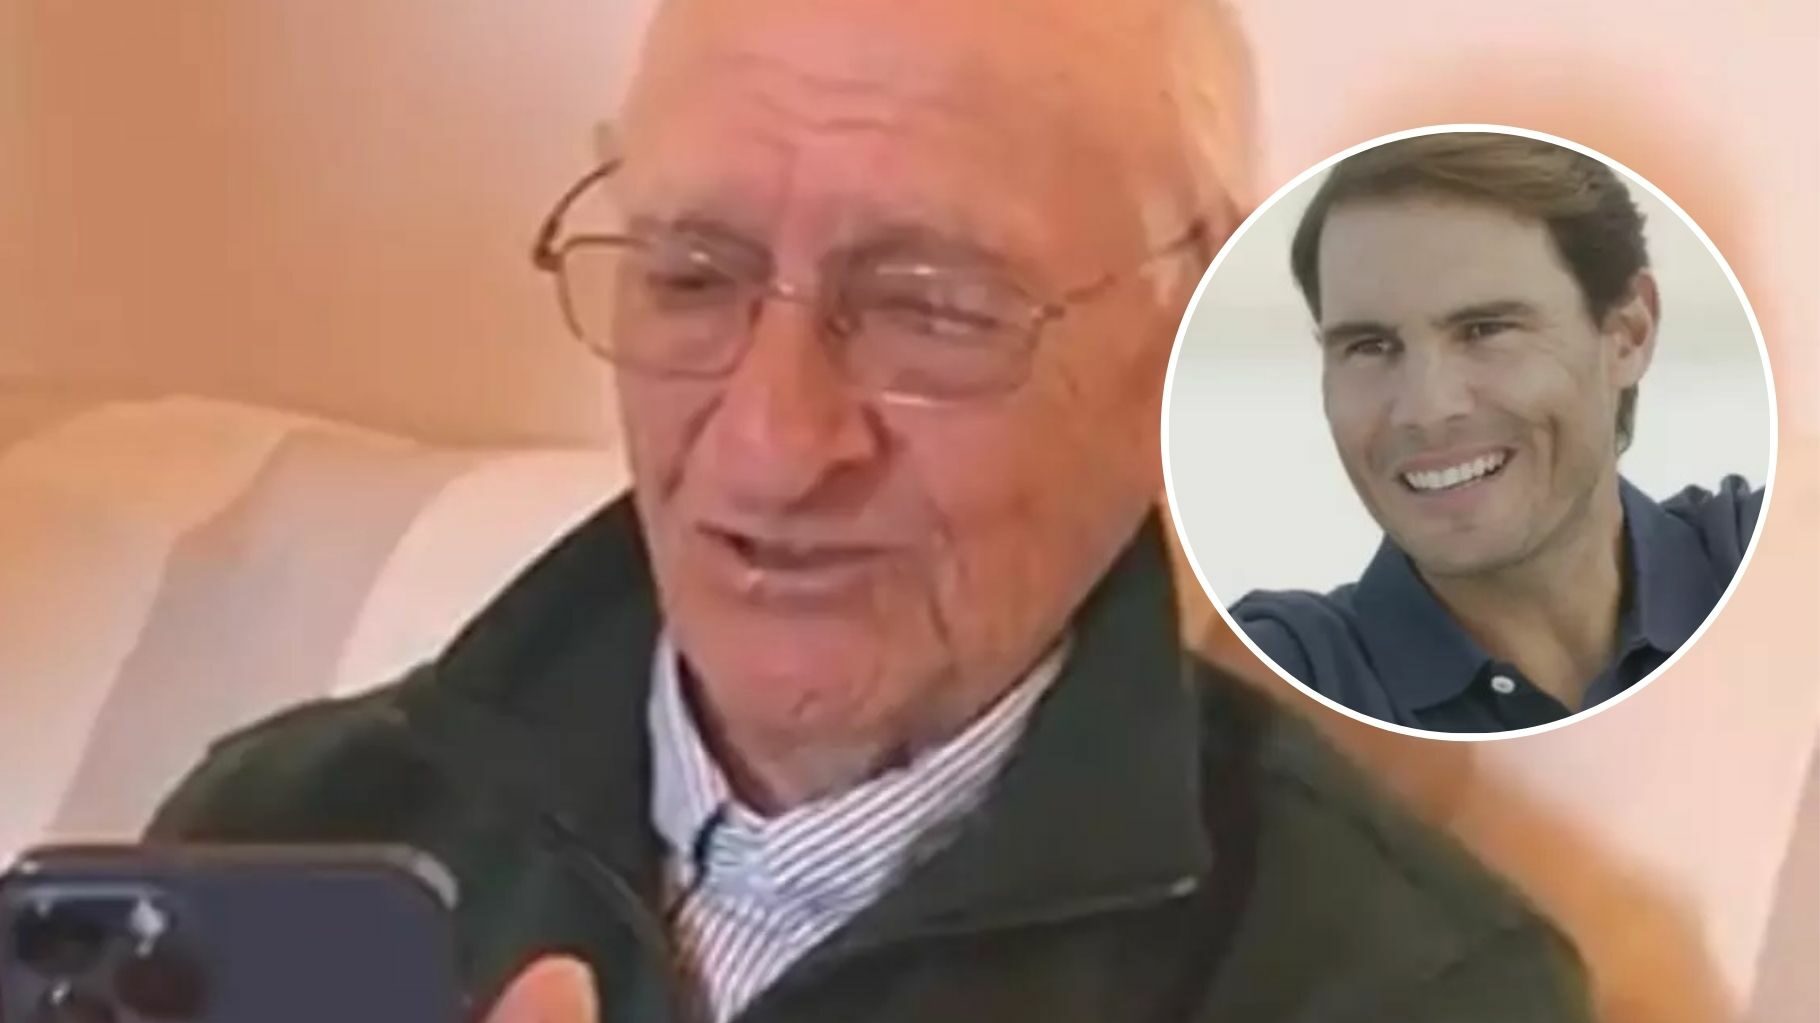 La felicitación de Rafa Nadal a un abuelo de 90 años que se ha hecho viral